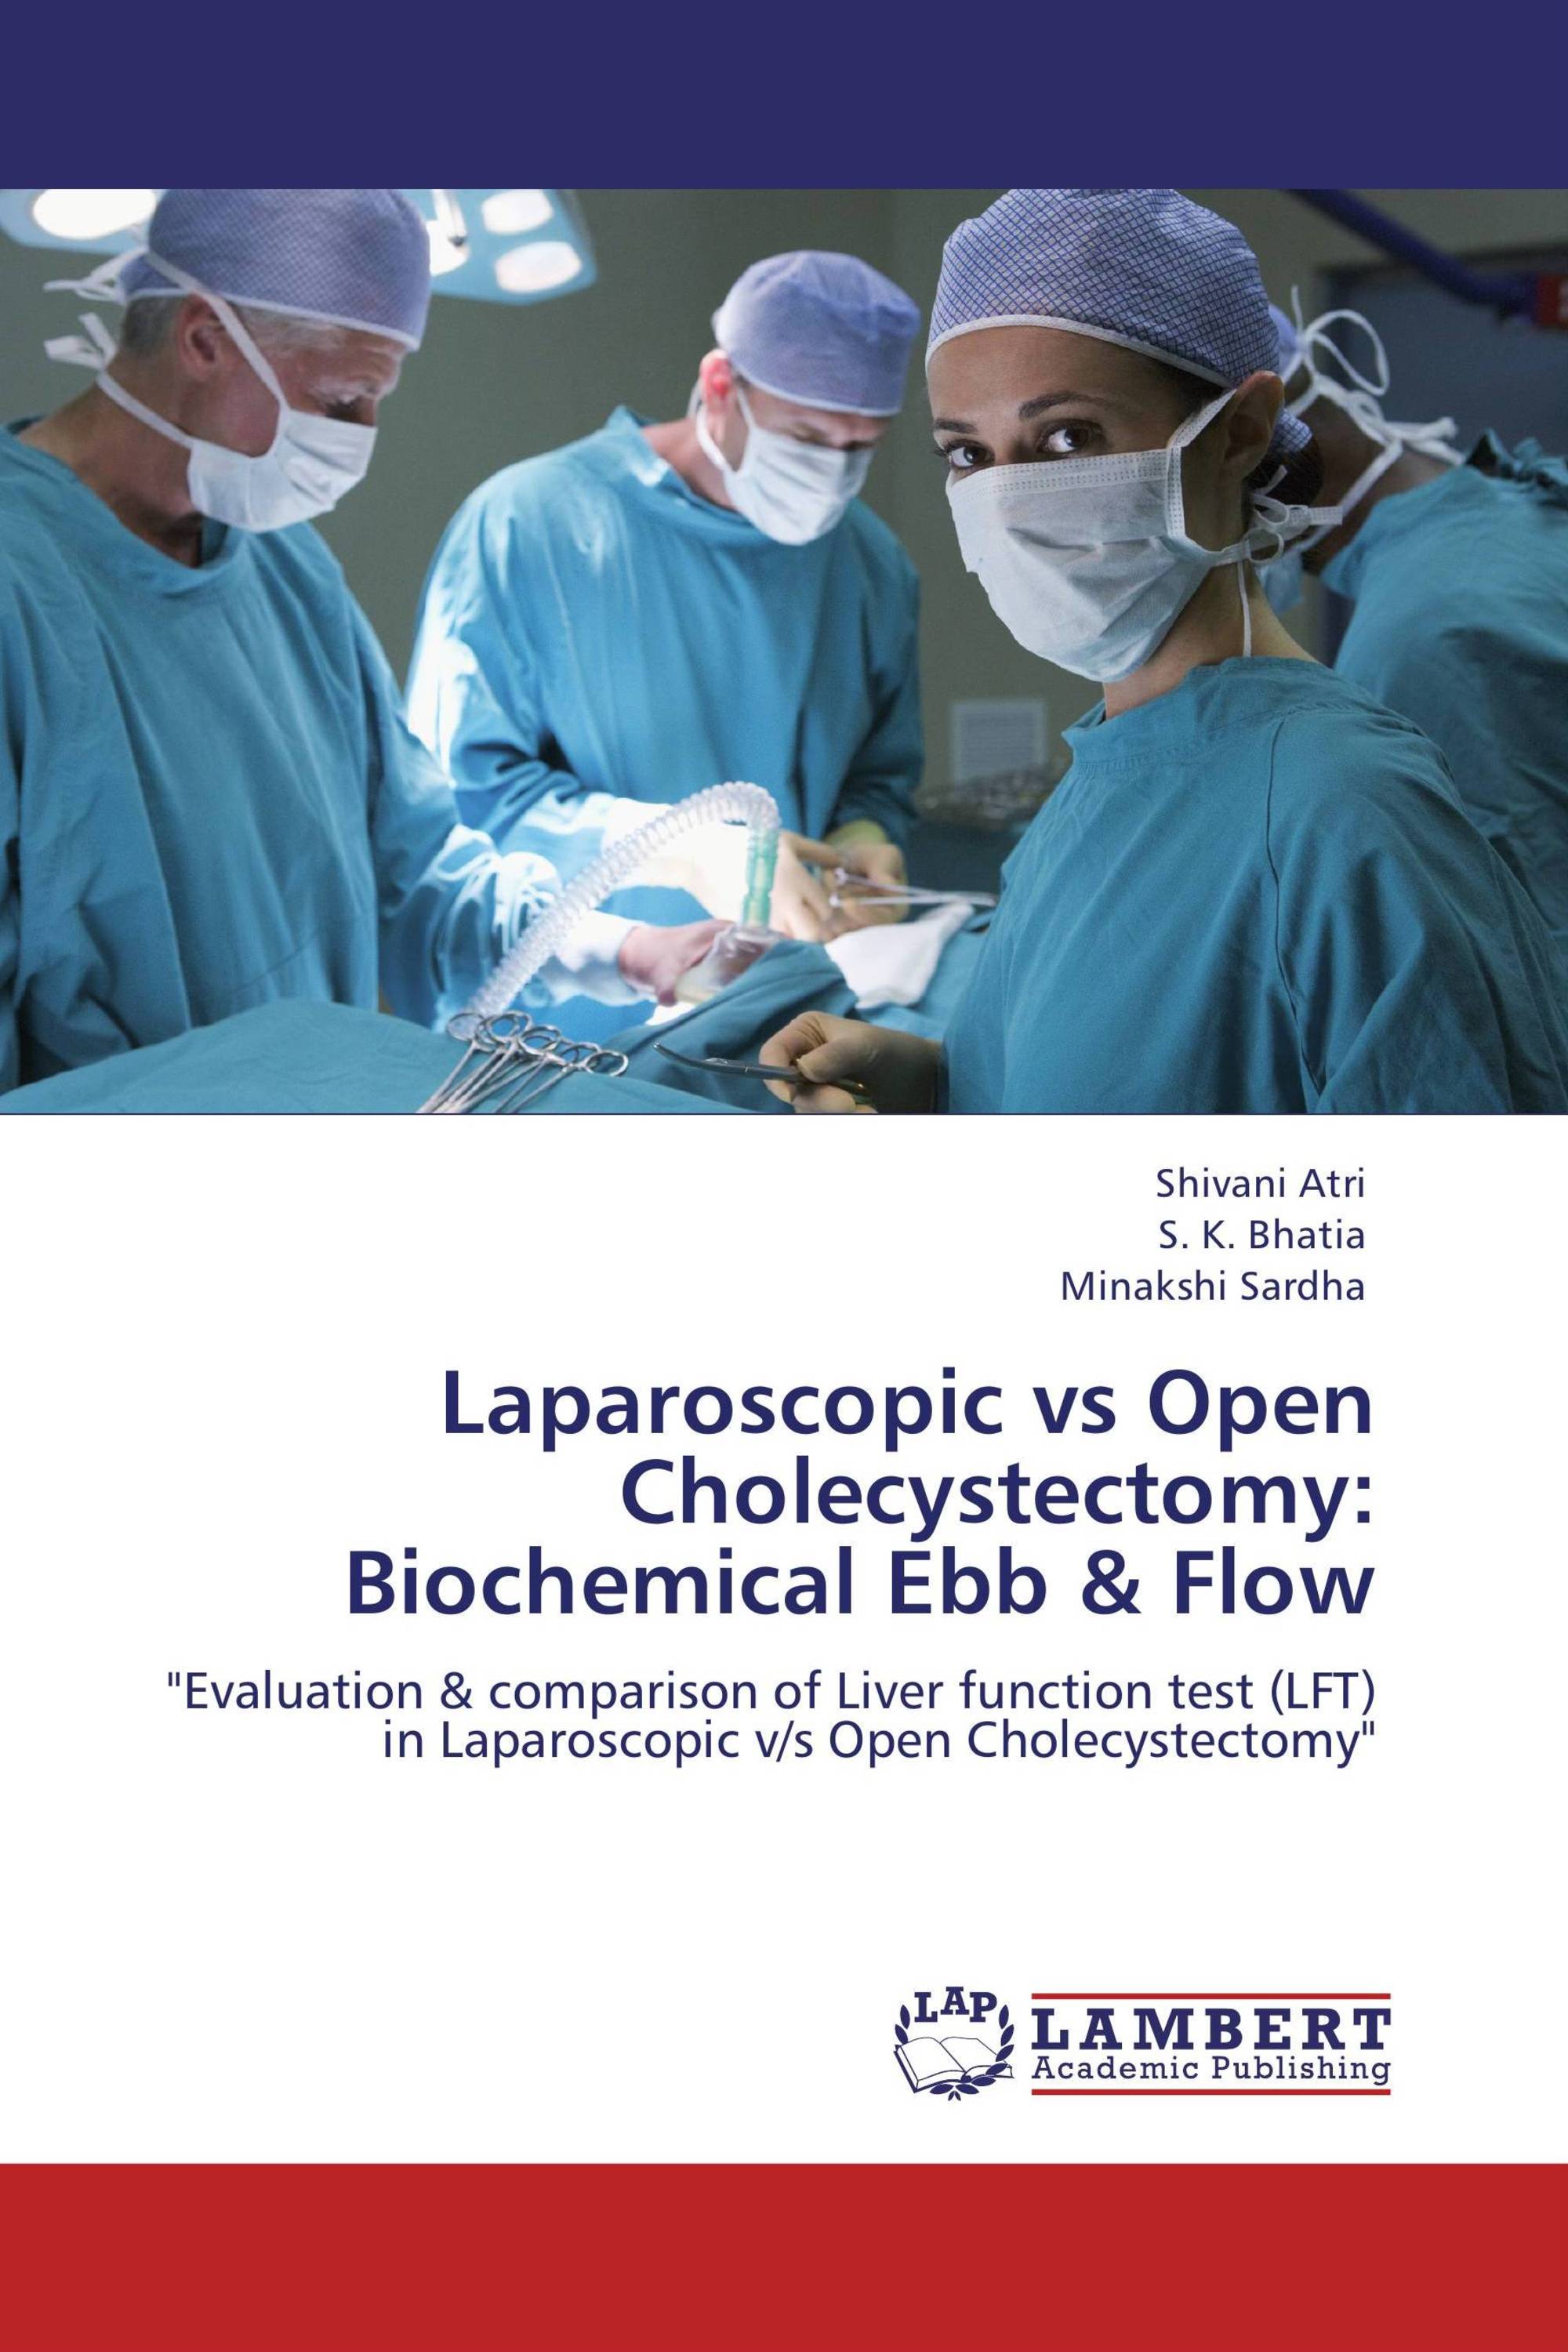 thesis topics on laparoscopic cholecystectomy